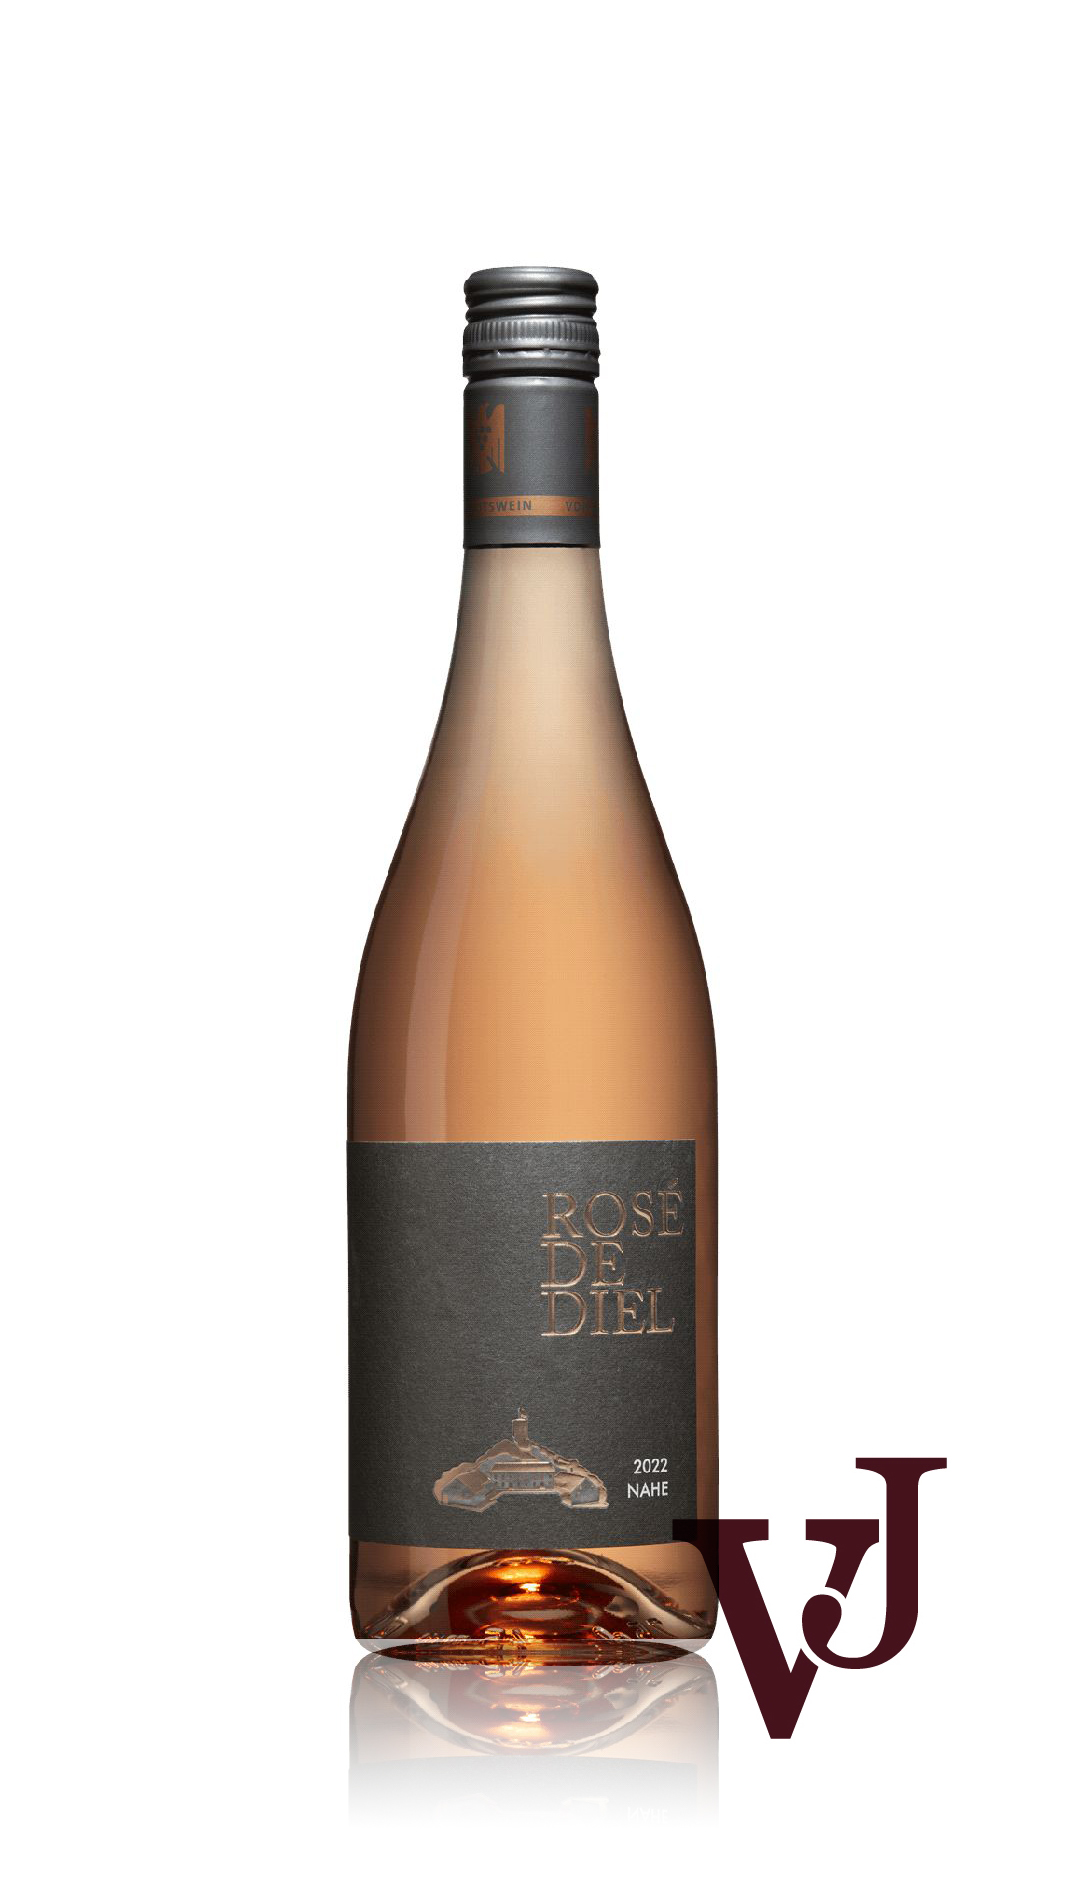 Rosé Vin - Rosé de Diel Schlossgut Diel 2022 artikel nummer 9300201 från producenten ens egna vingårar.Producent från området Tyskland